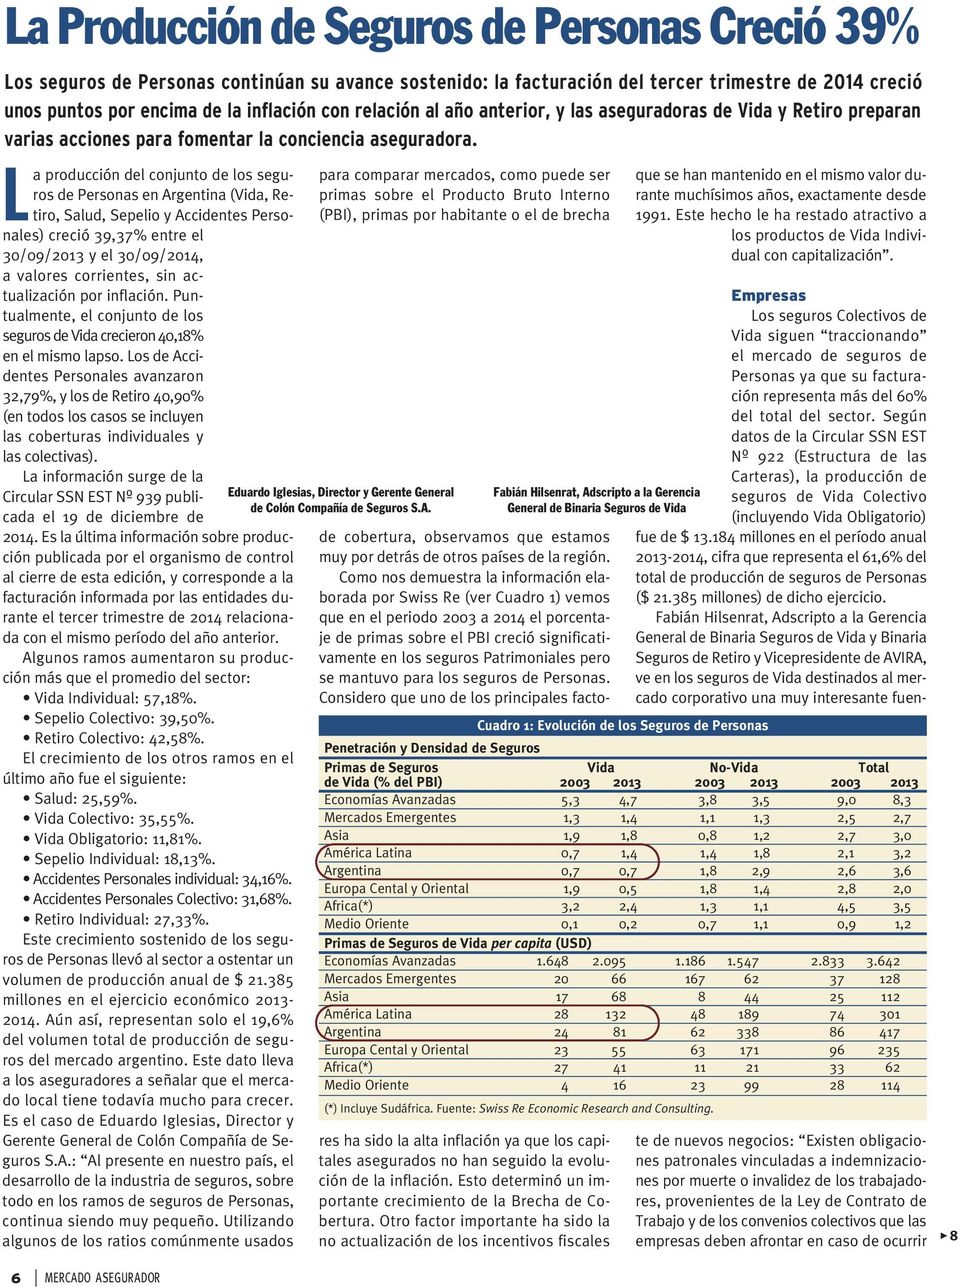 La producción del conjunto de los seguros de Personas en Argentina (Vida, Retiro, Salud, Sepelio y Accidentes Personales) creció 39,37% entre el 30/09/2013 y el 30/09/2014, a valores corrientes, sin